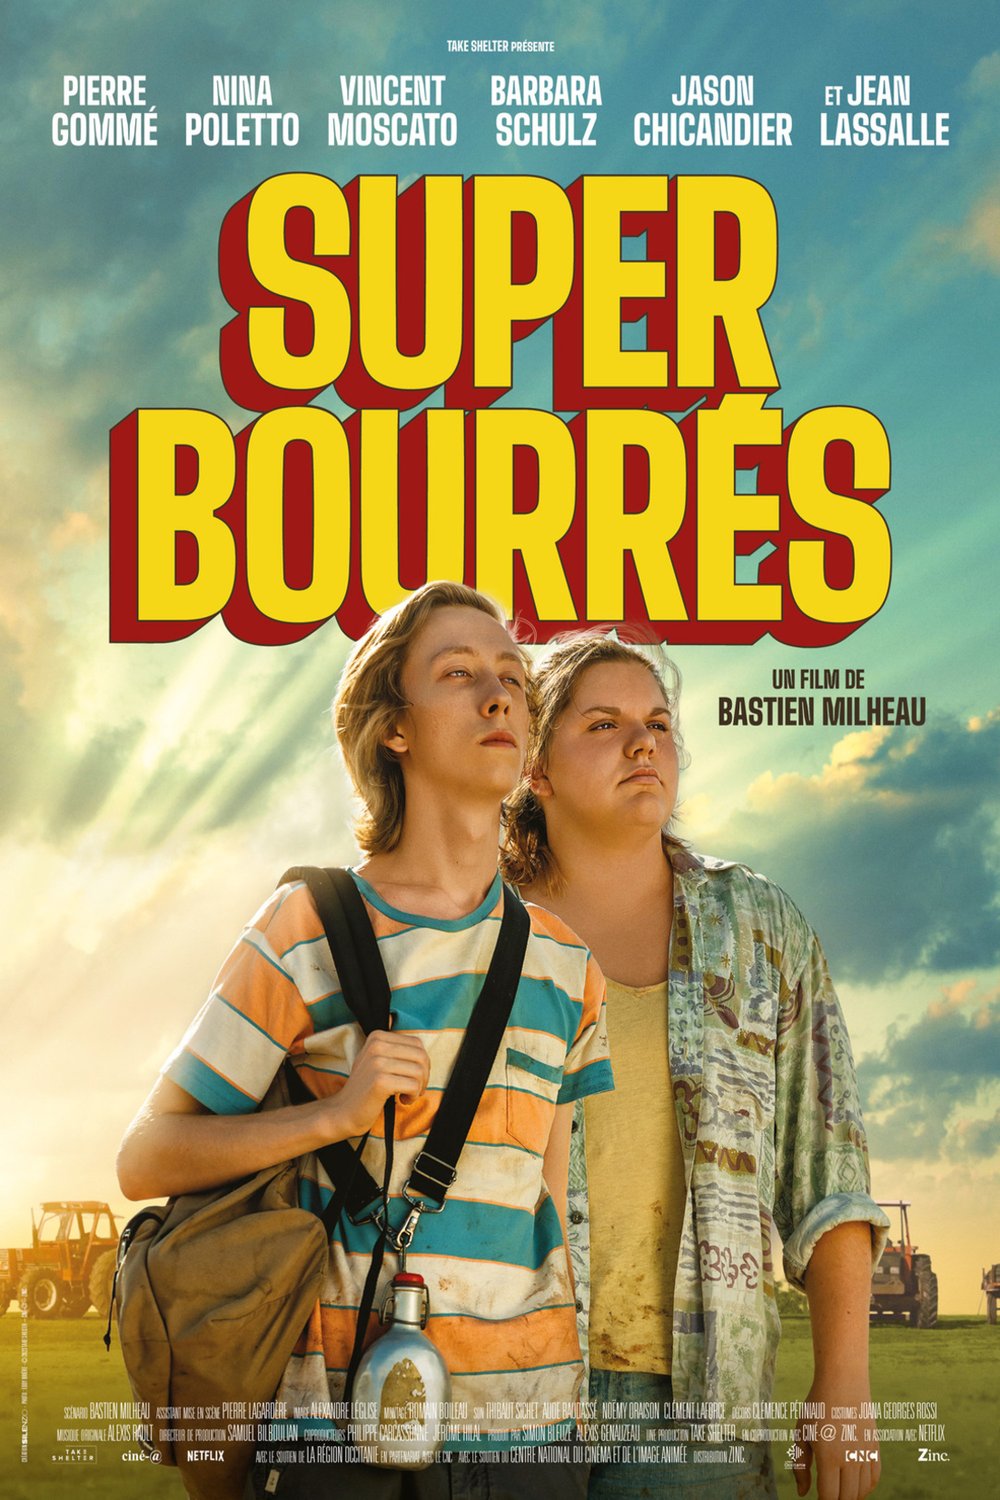 Poster of the movie Super bourrés